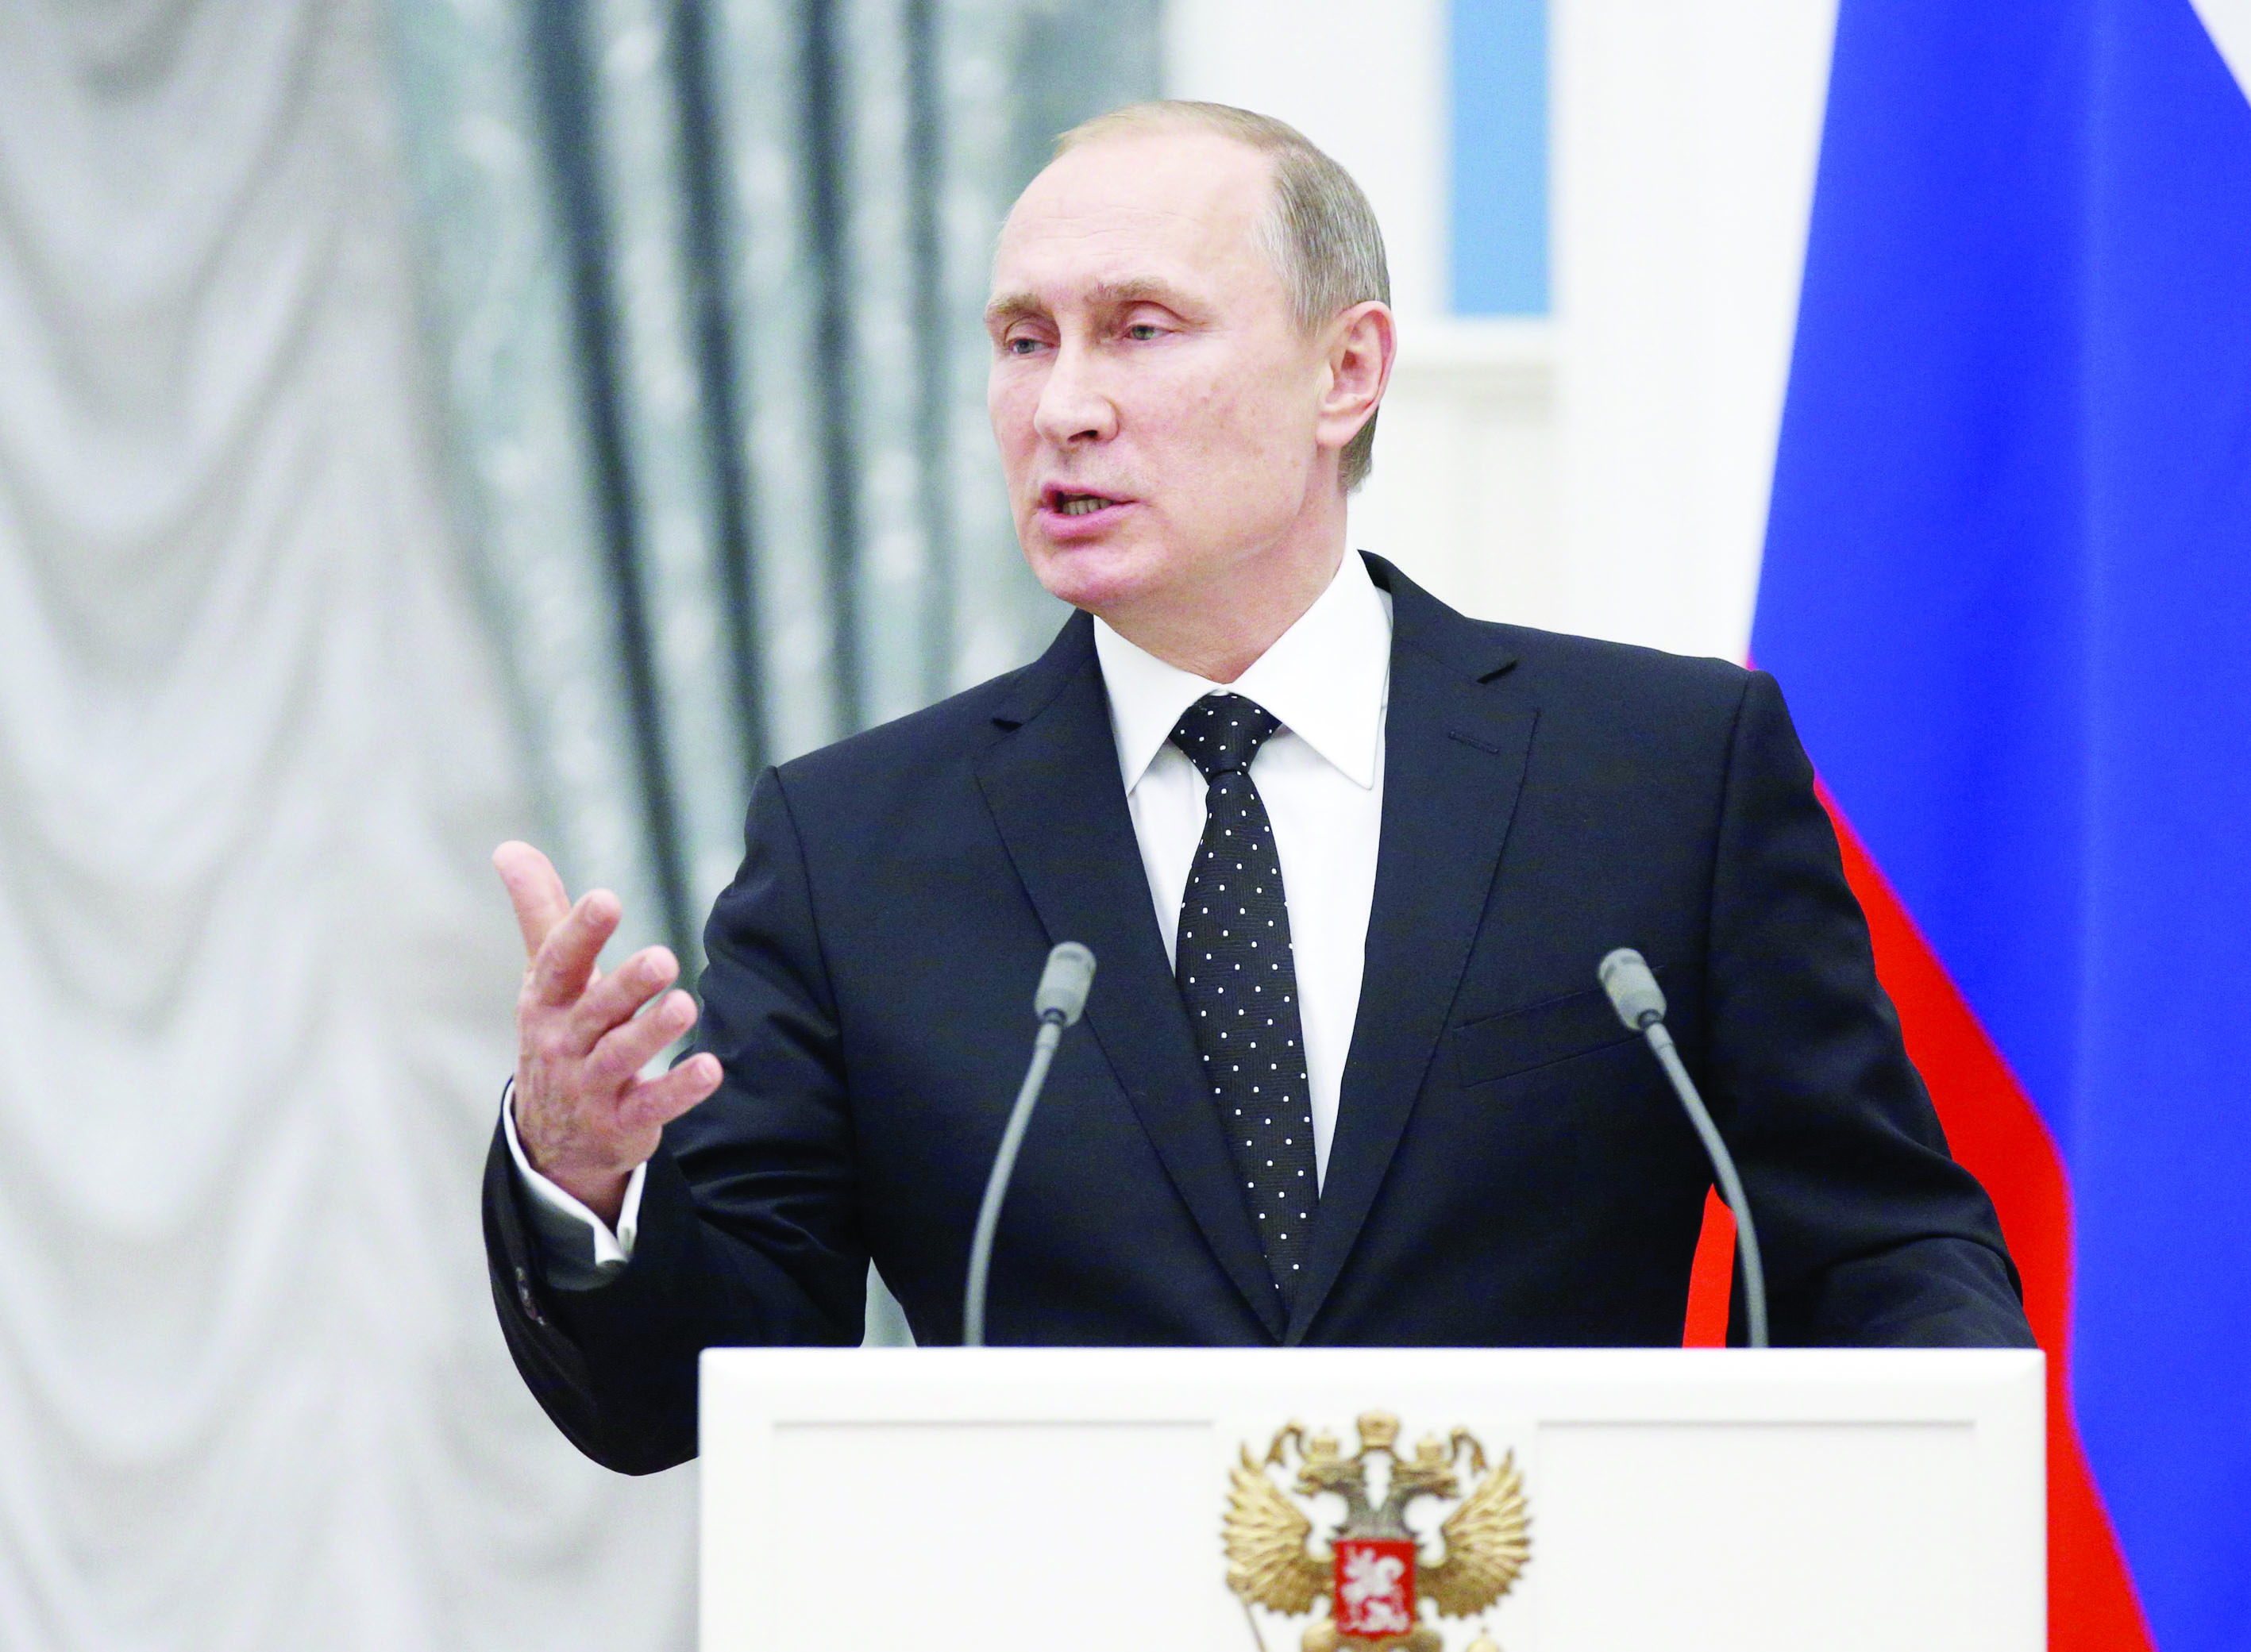 بوتين يحدد الـ 18 من سبتمبر لإجراء انتخابات مجلس النواب